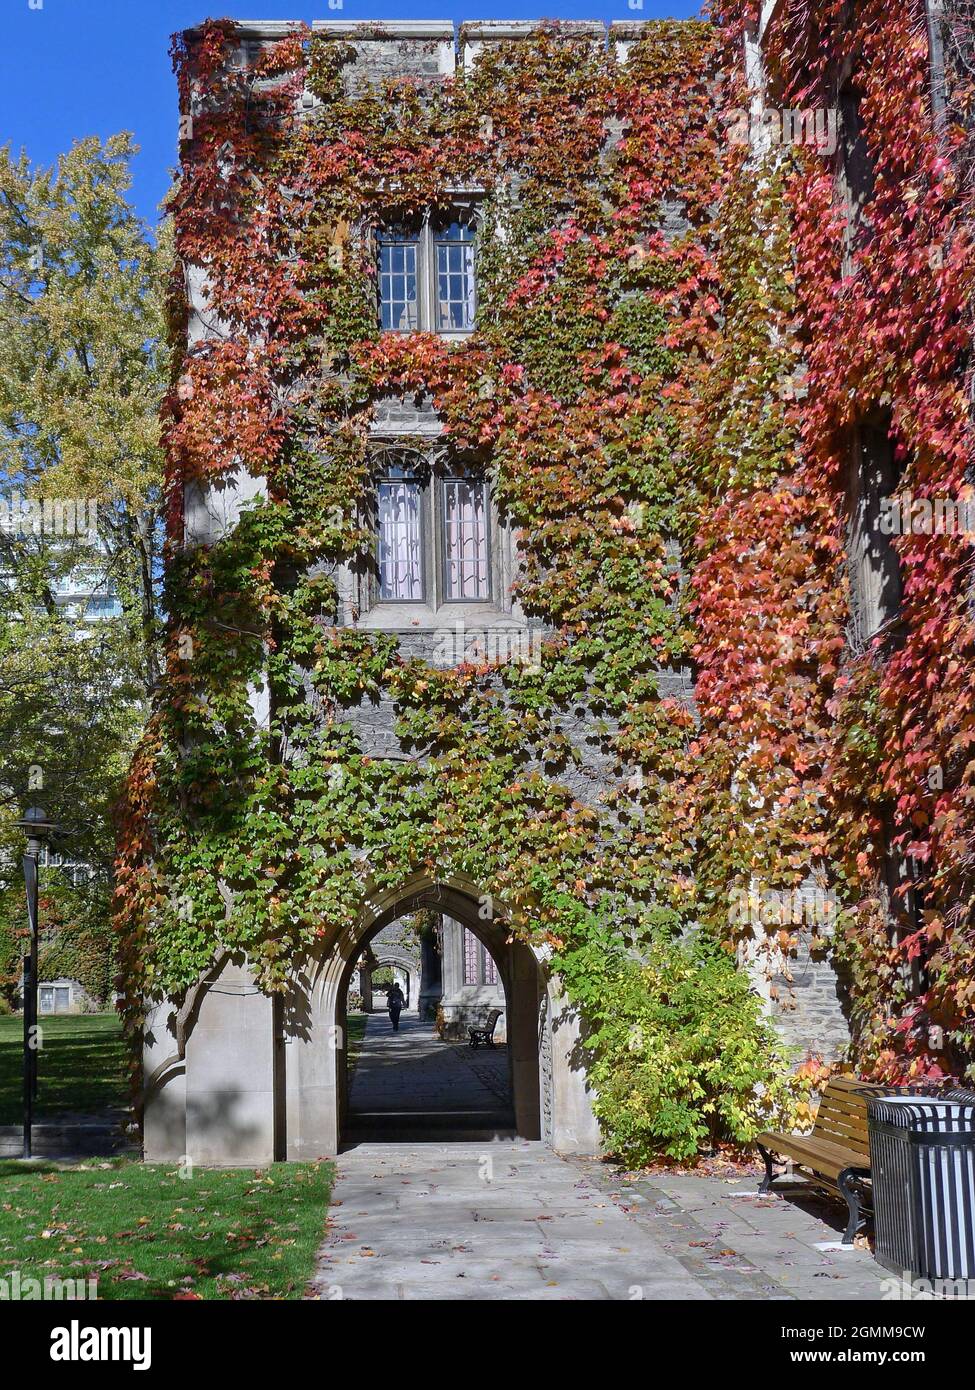 Bâtiment universitaire en pierre de style gothique recouvert de lierre dans des couleurs d'automne brillantes Banque D'Images